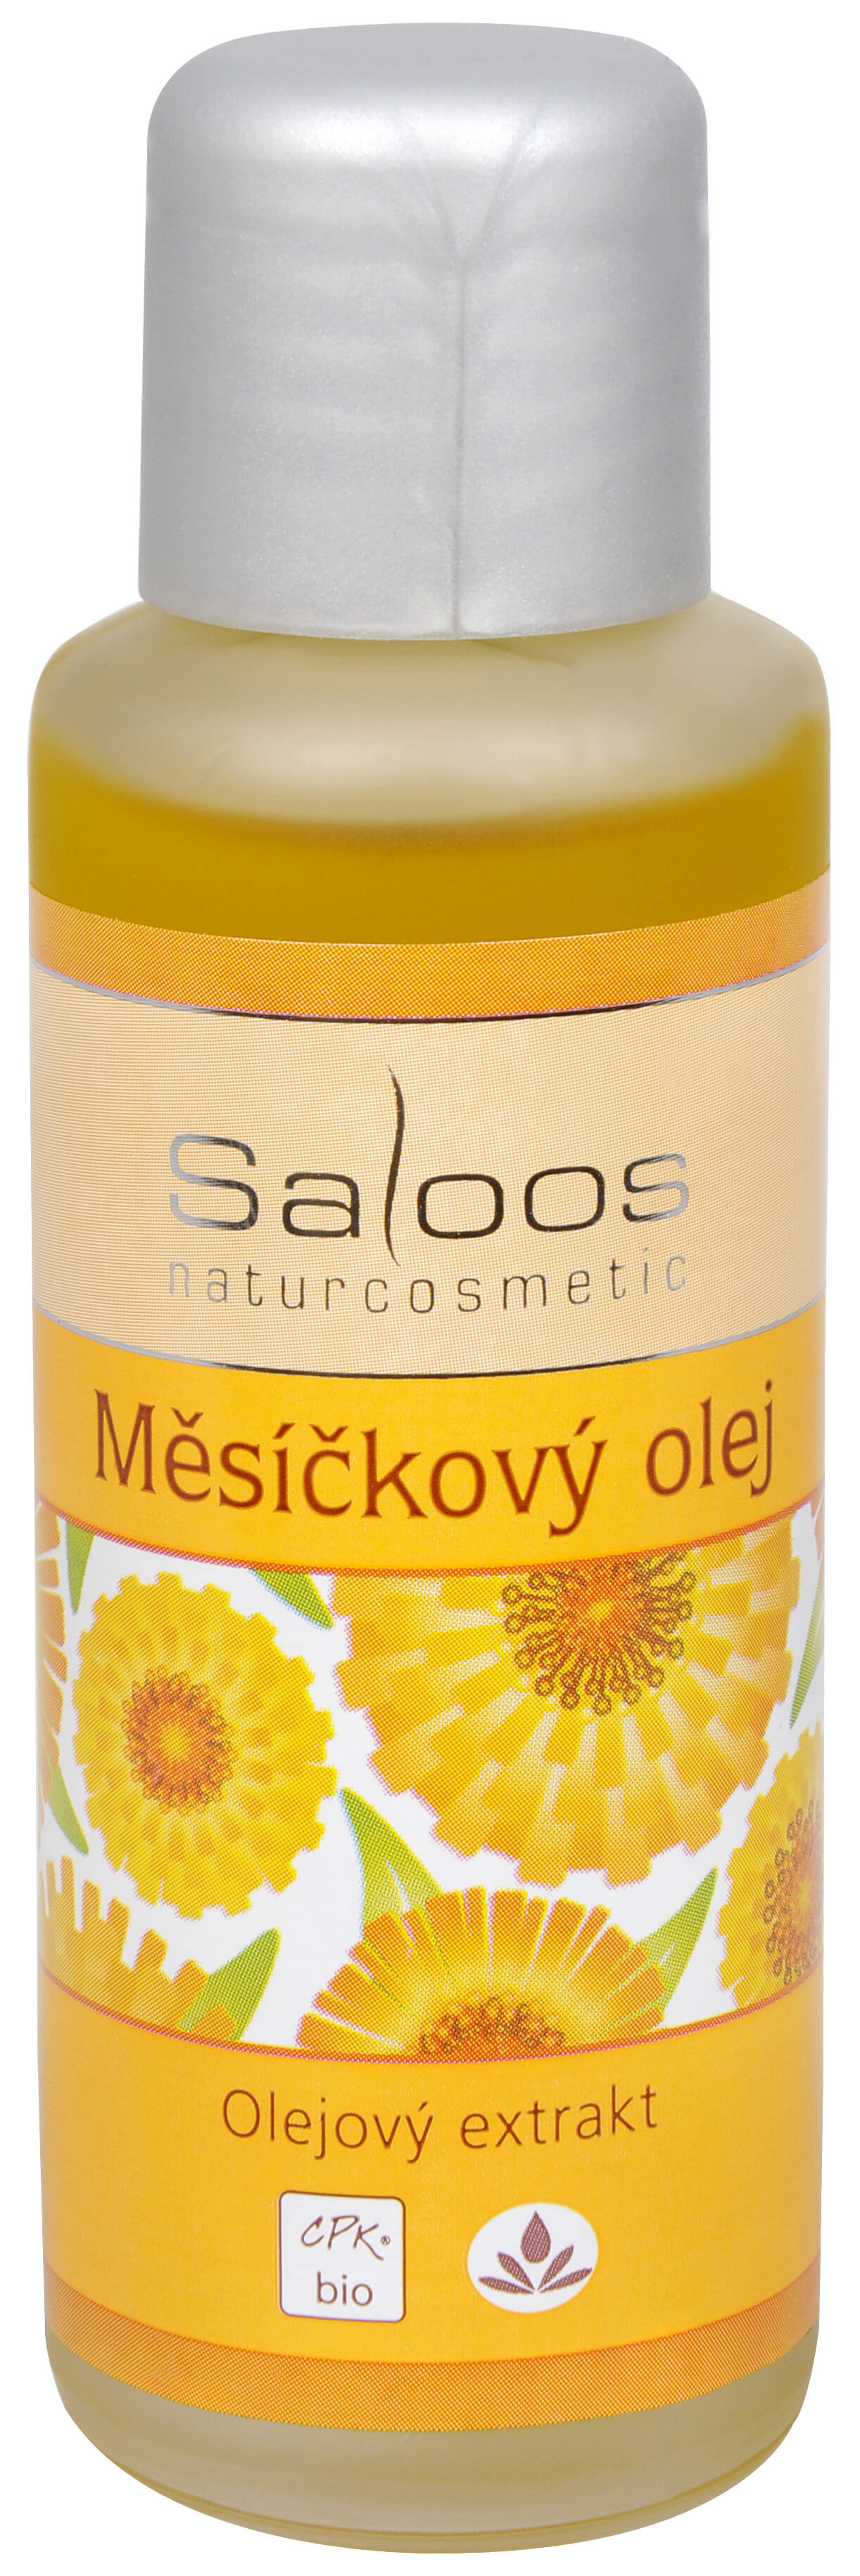 Zobrazit detail výrobku Saloos Bio Měsíčkový olej (olejový extrakt) 500 ml + 2 měsíce na vrácení zboží